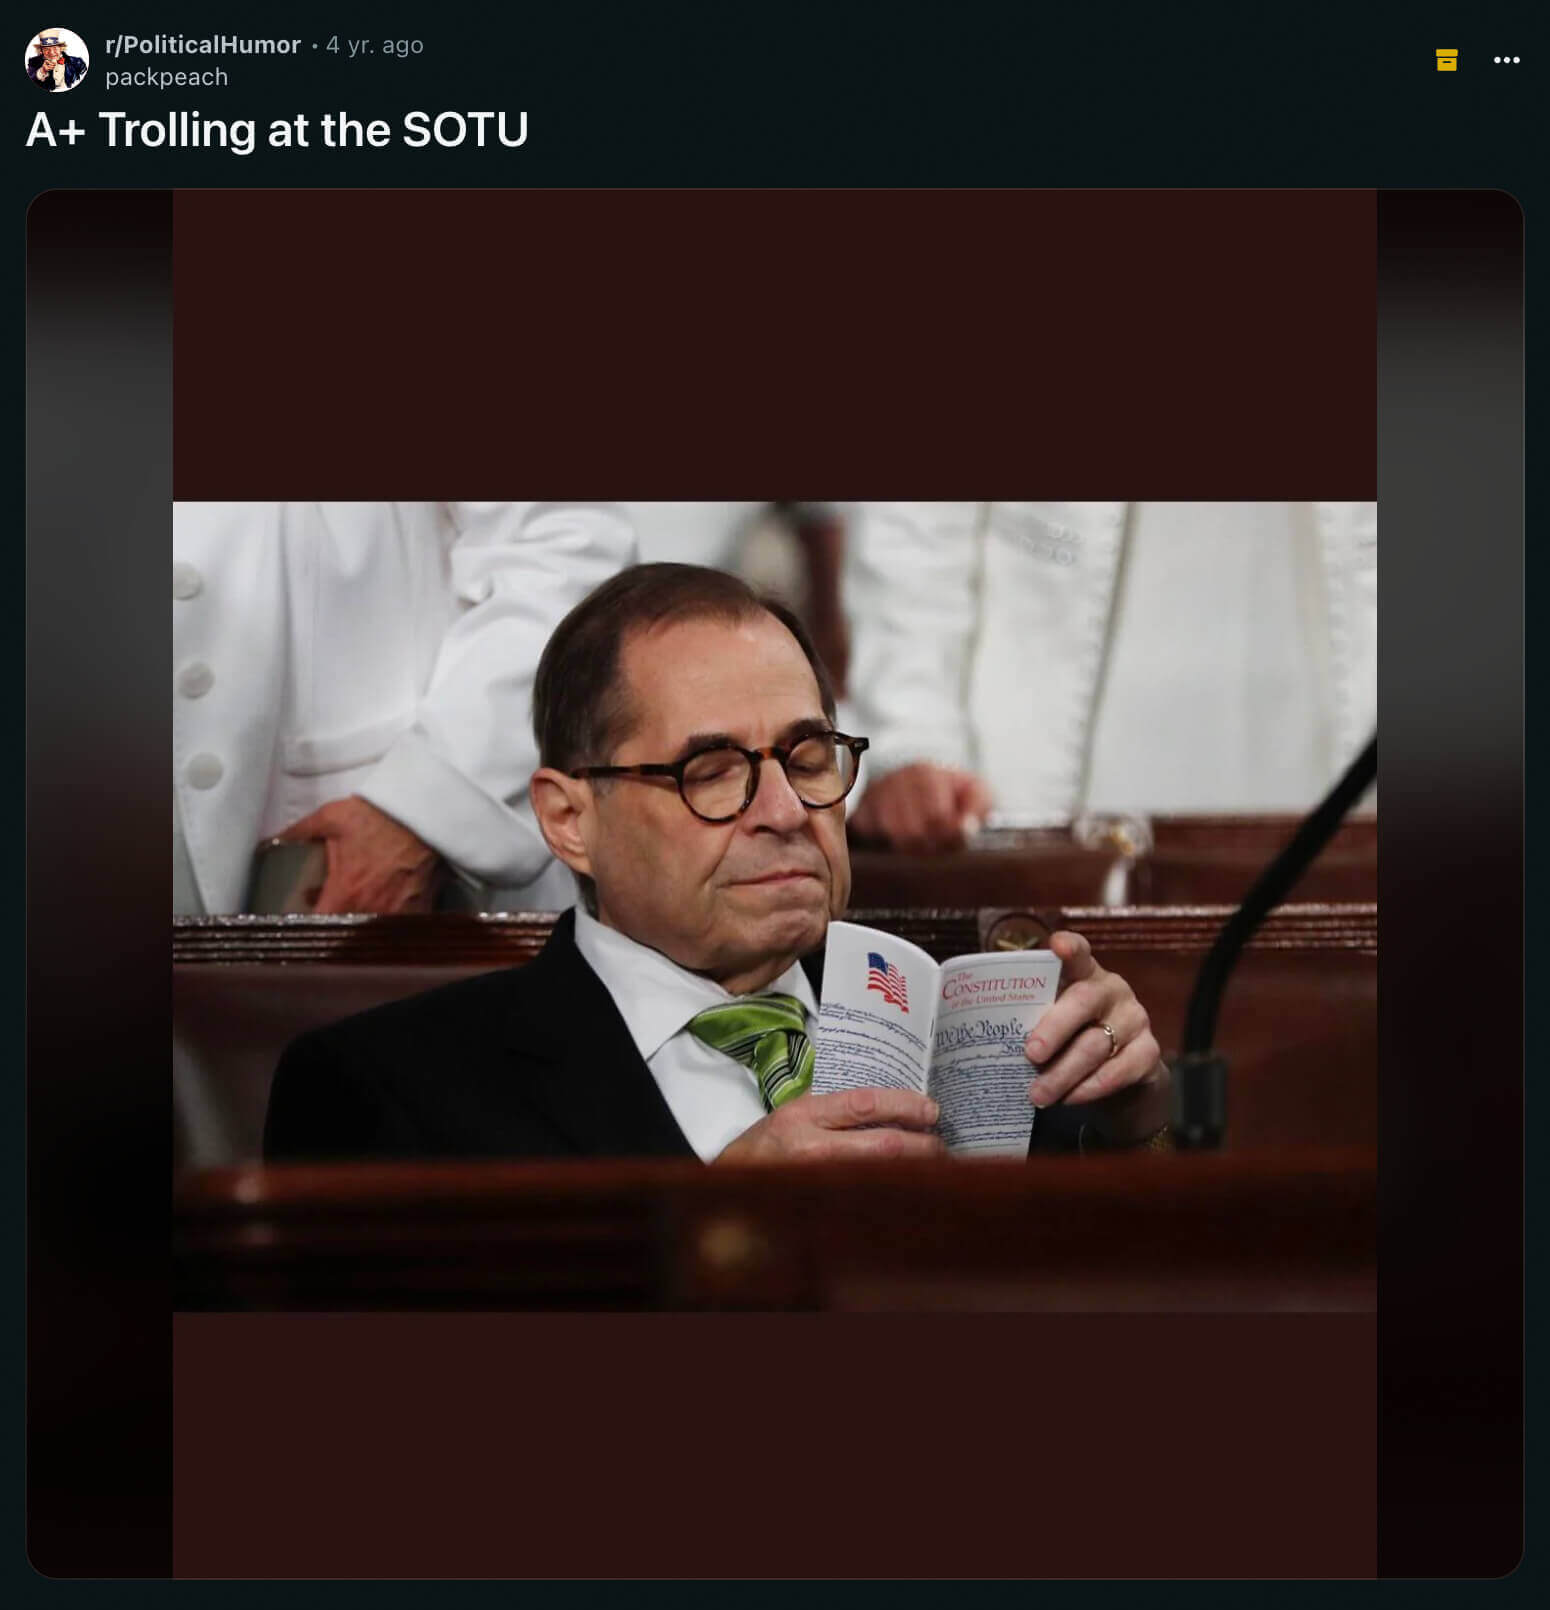 Democrat Congressman trolling a Republican POTUS at the SOTU